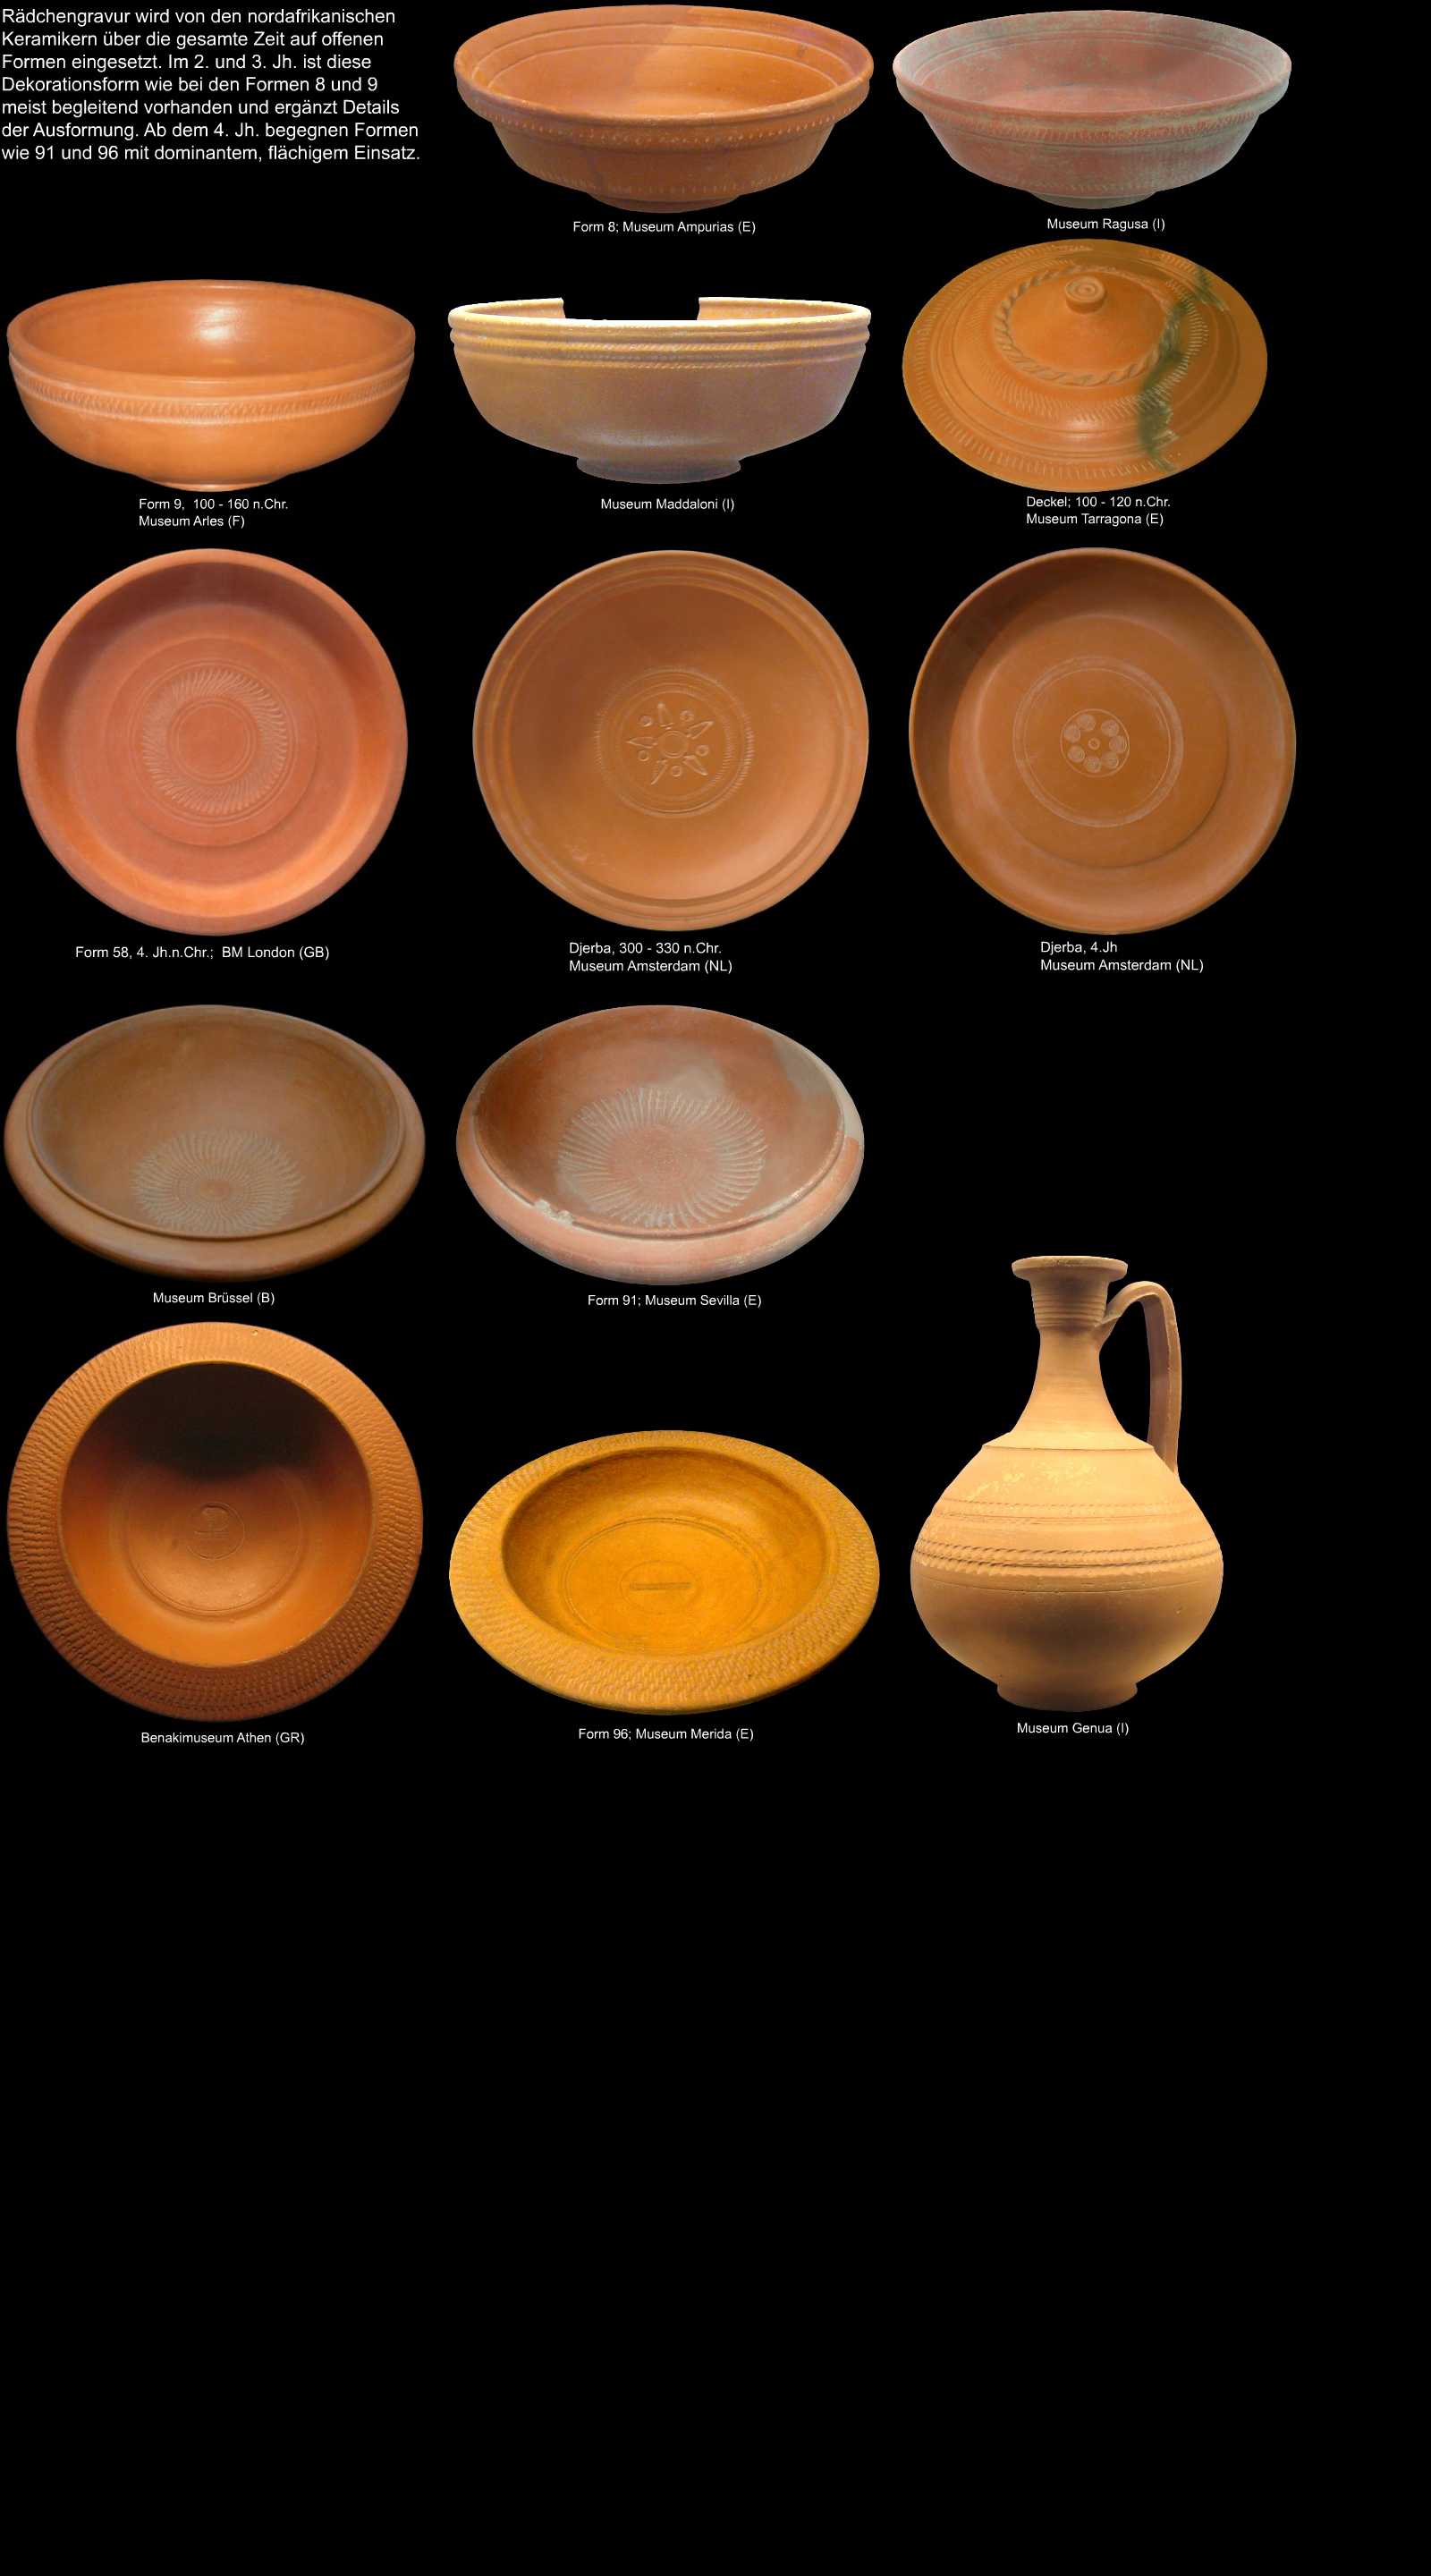 römische radgravierte Keramik aus Nordafrika